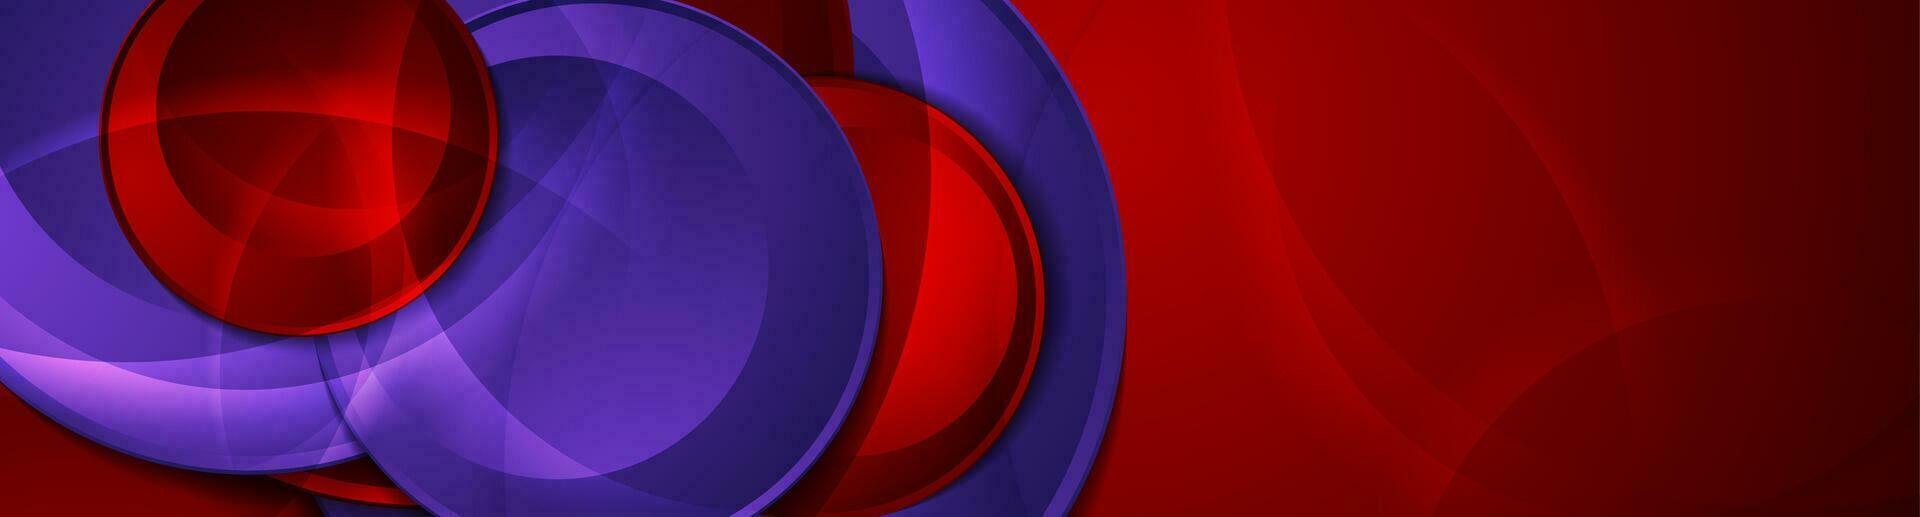 hög kontrast röd violett abstrakt tech företags- baner design vektor